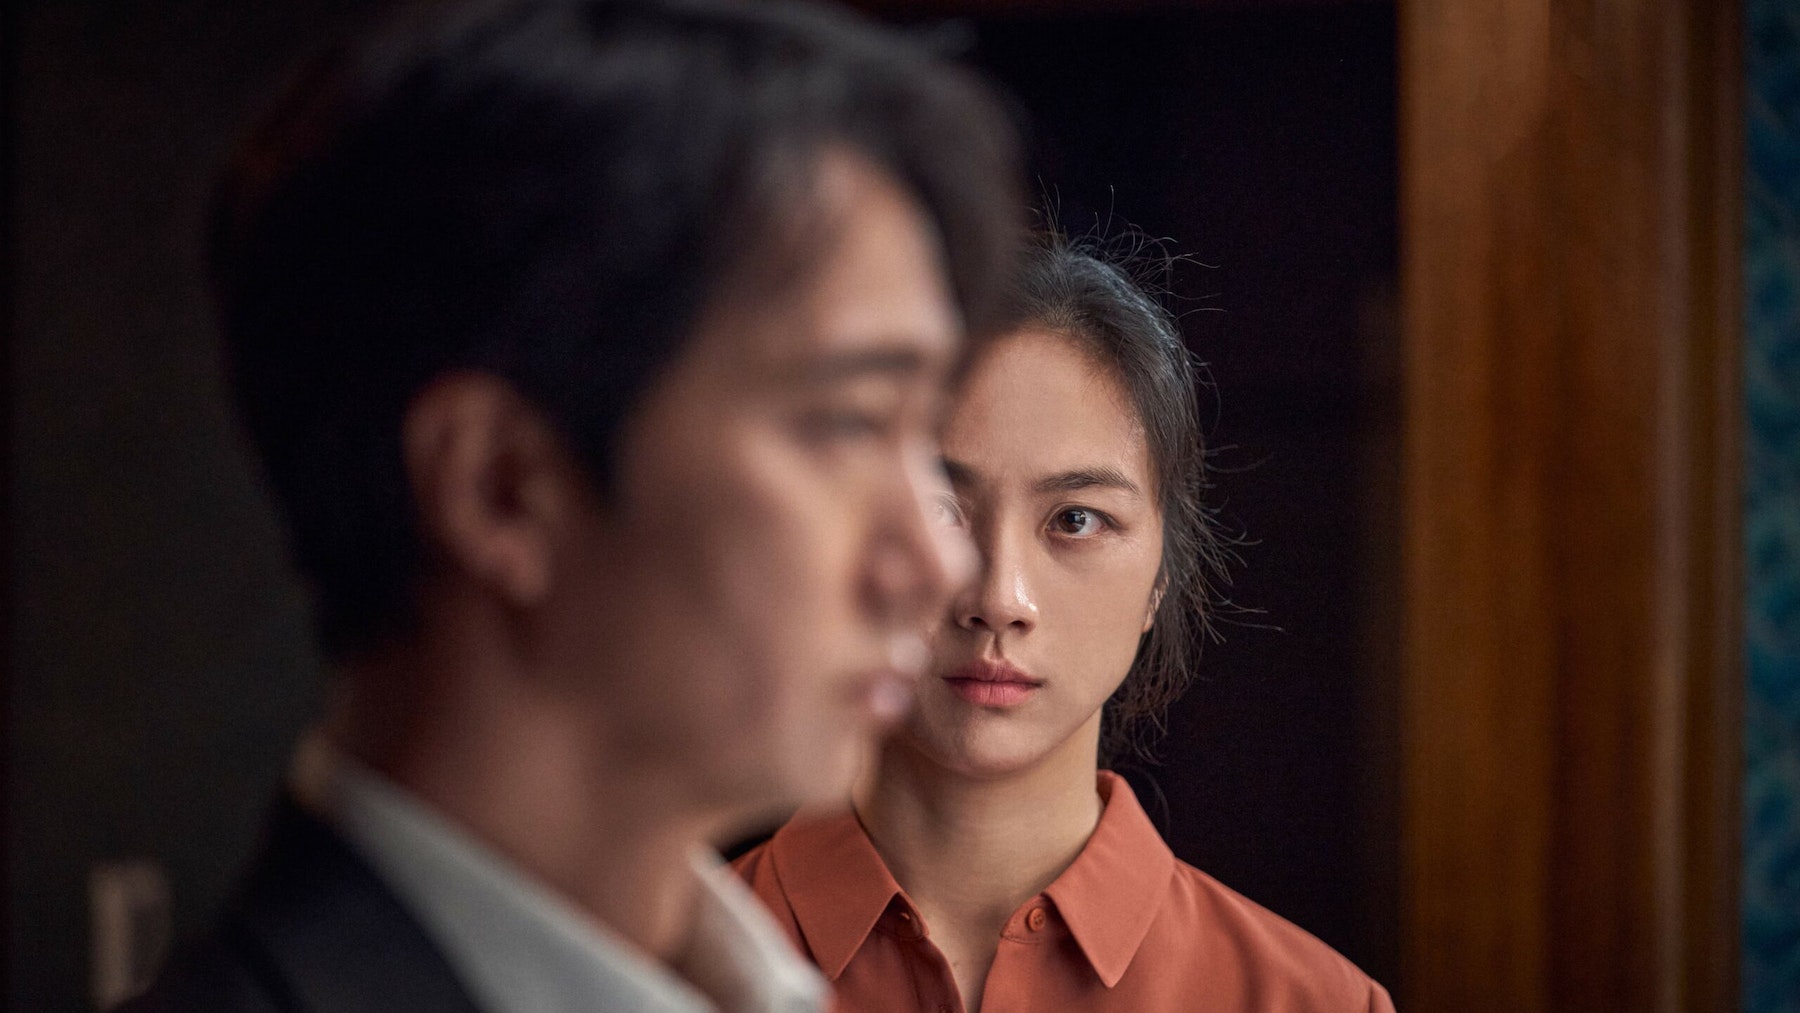 Vezi Trailerul Pentru Cel Mai Nou Film Al Lui Park Chan-Wook, Decision To Leave - Contemporary-Establishment